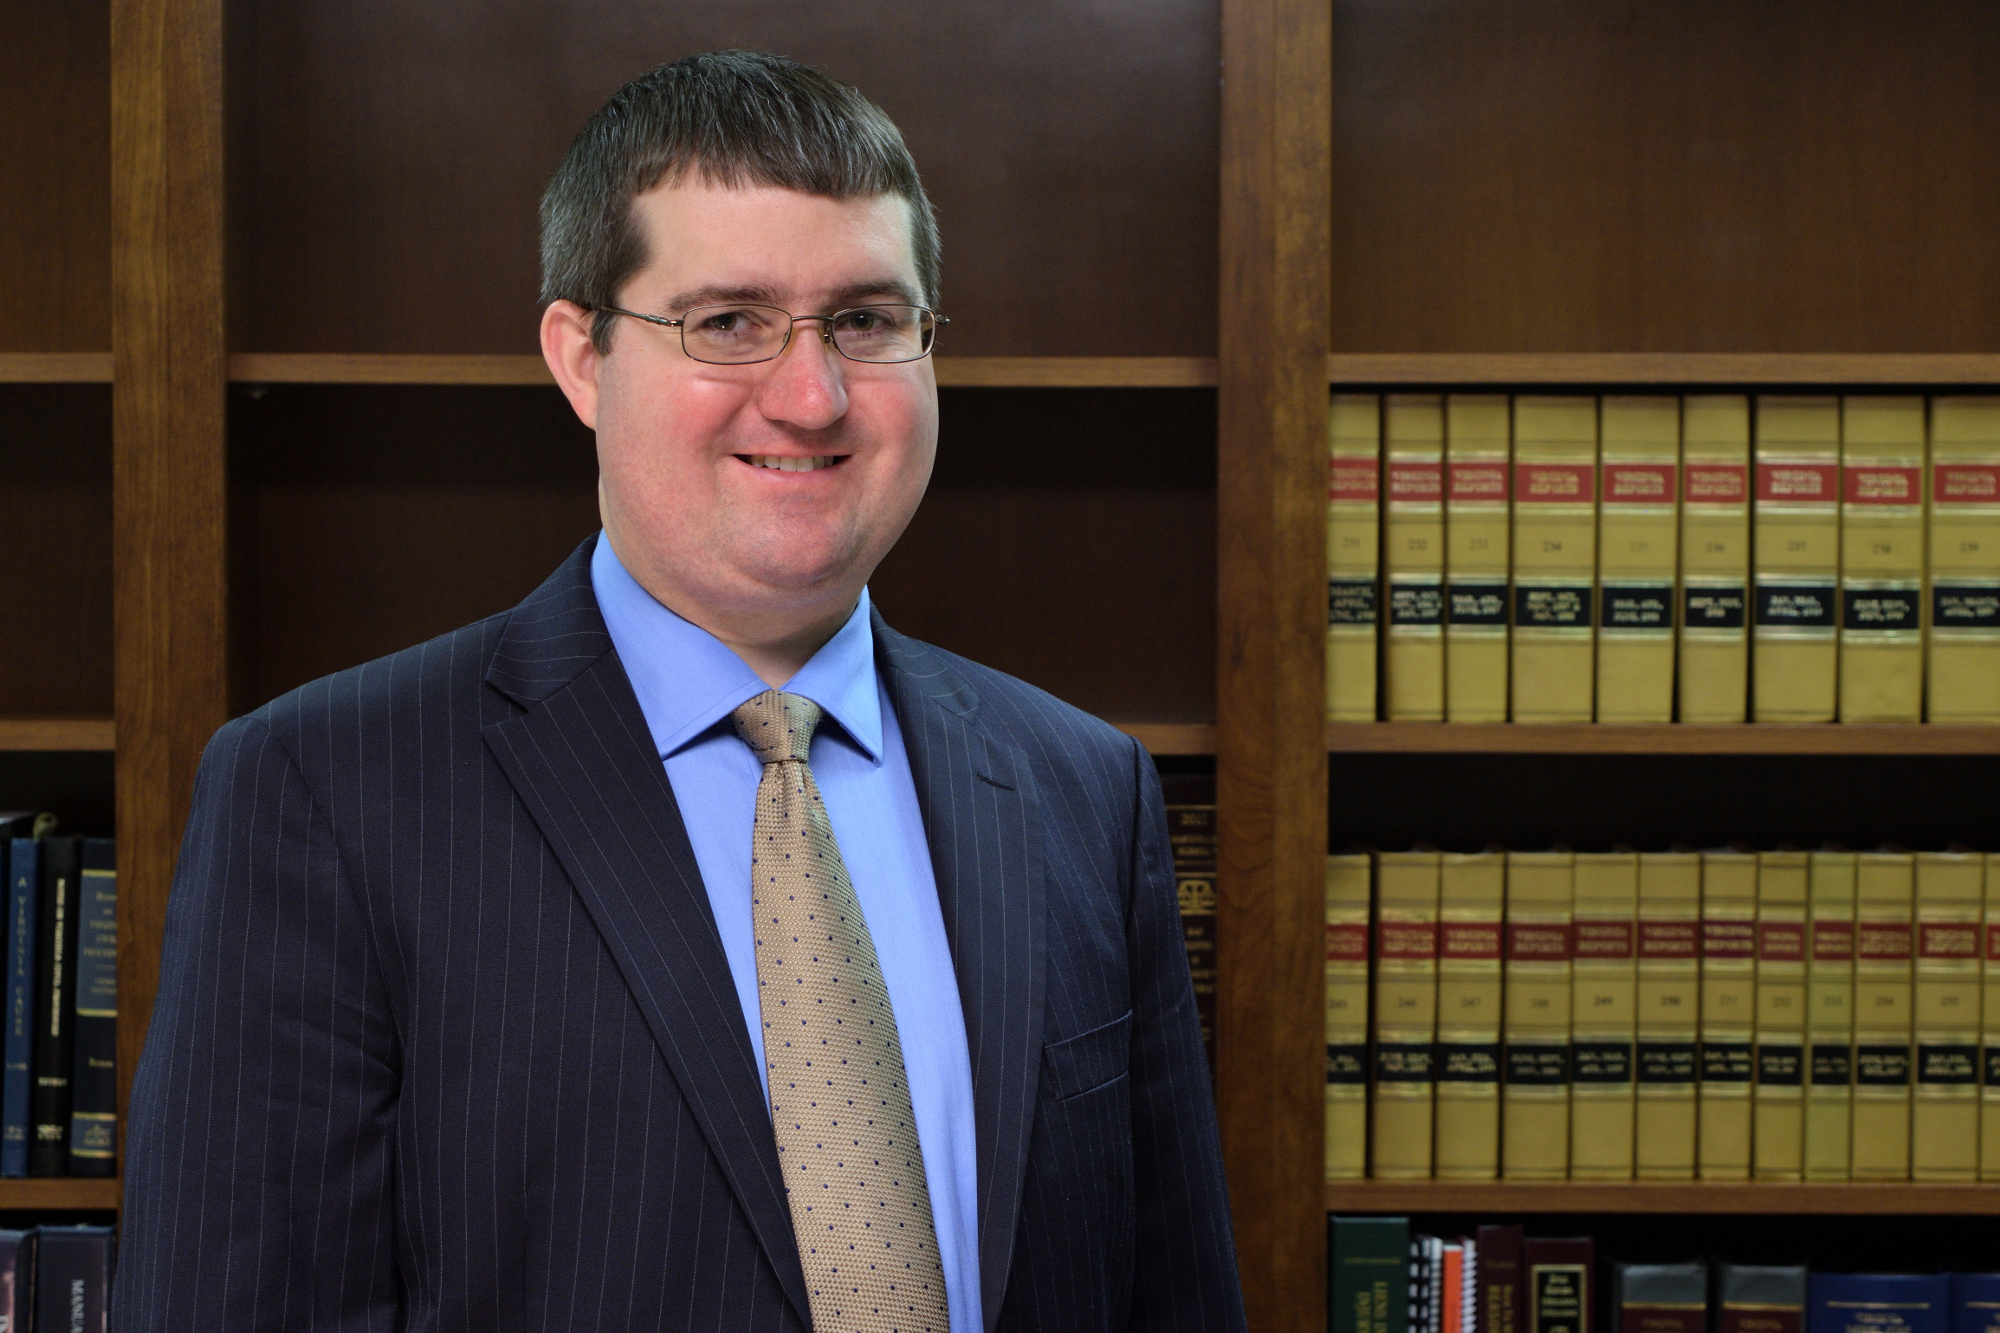 Derrick P. Fellows, a lawyer in Victoria, Virginia and Farmville, Virginia